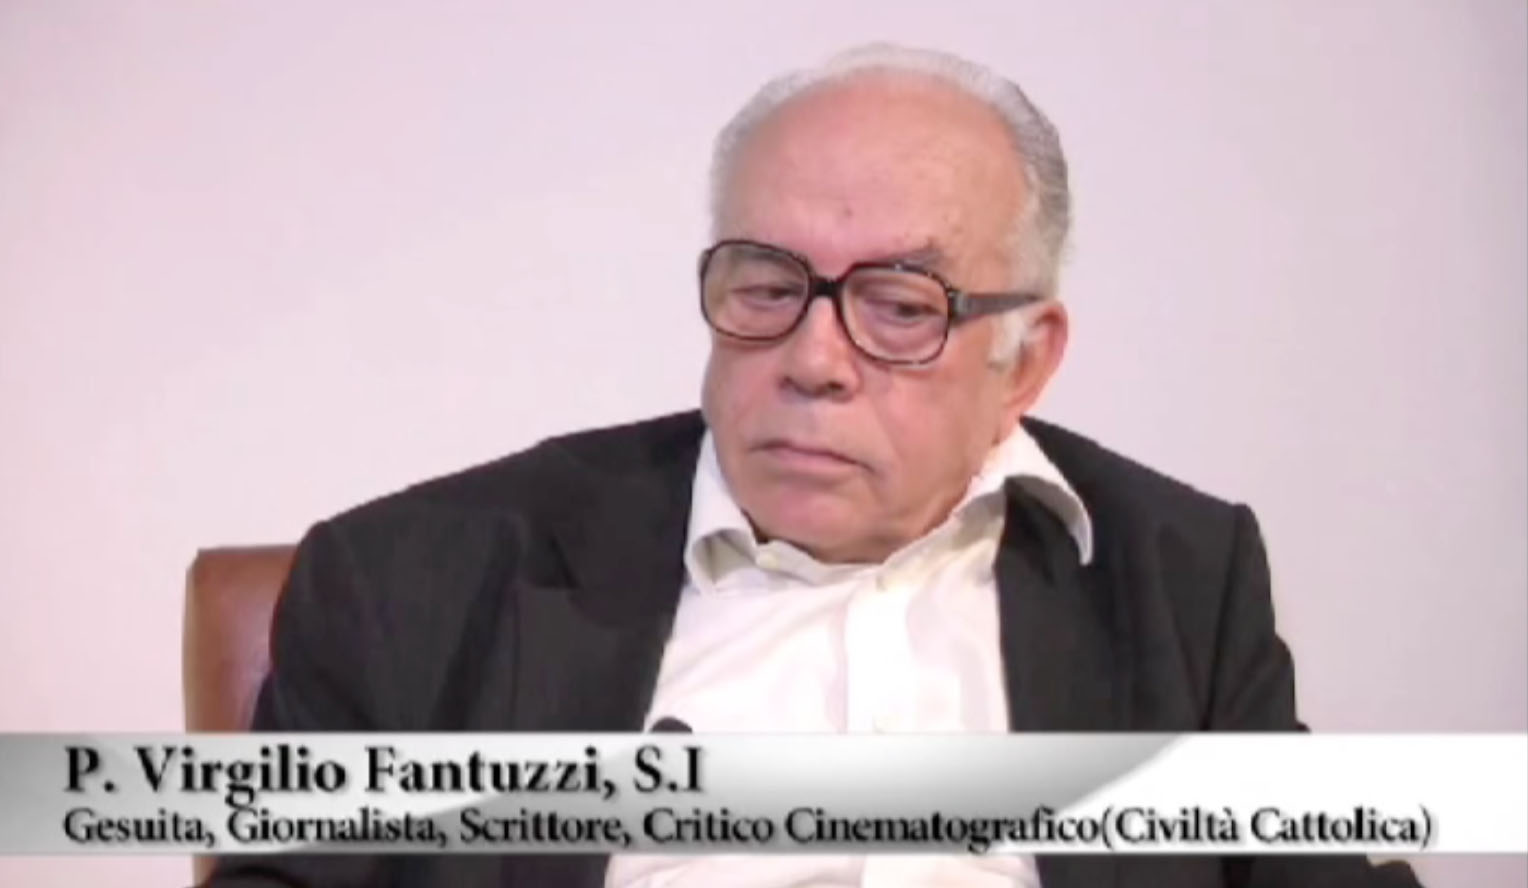 P. Virgilio Fantuzzi S.I - Gesuita, Giornalista, Scrittore, Critico Cinematografico (Civiltà Cattolica)